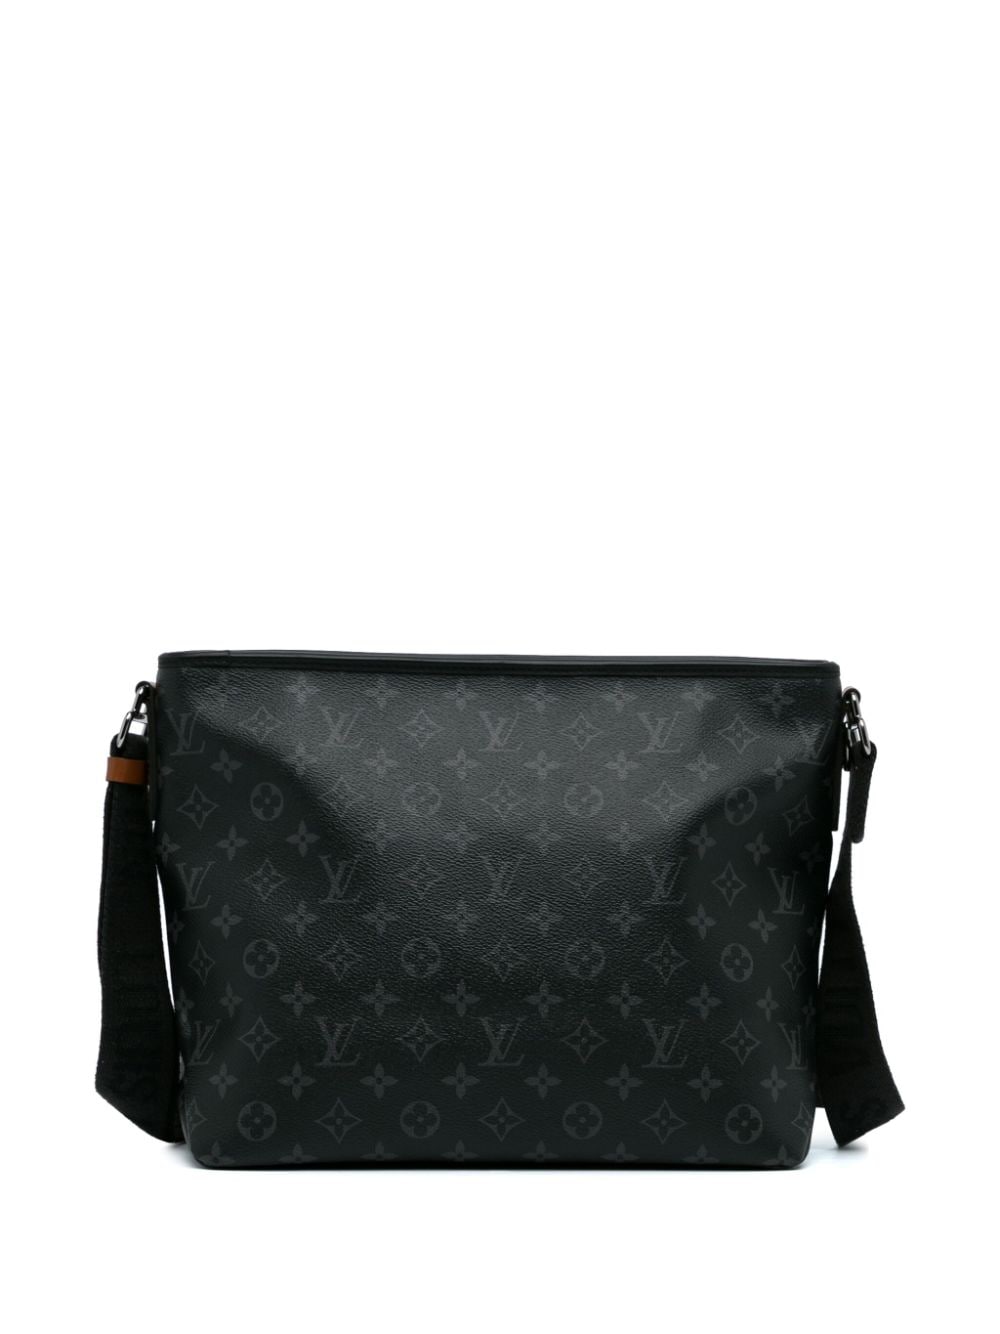 Louis Vuitton 2020 pre-owned Besace Zippée messenger bag - Zwart